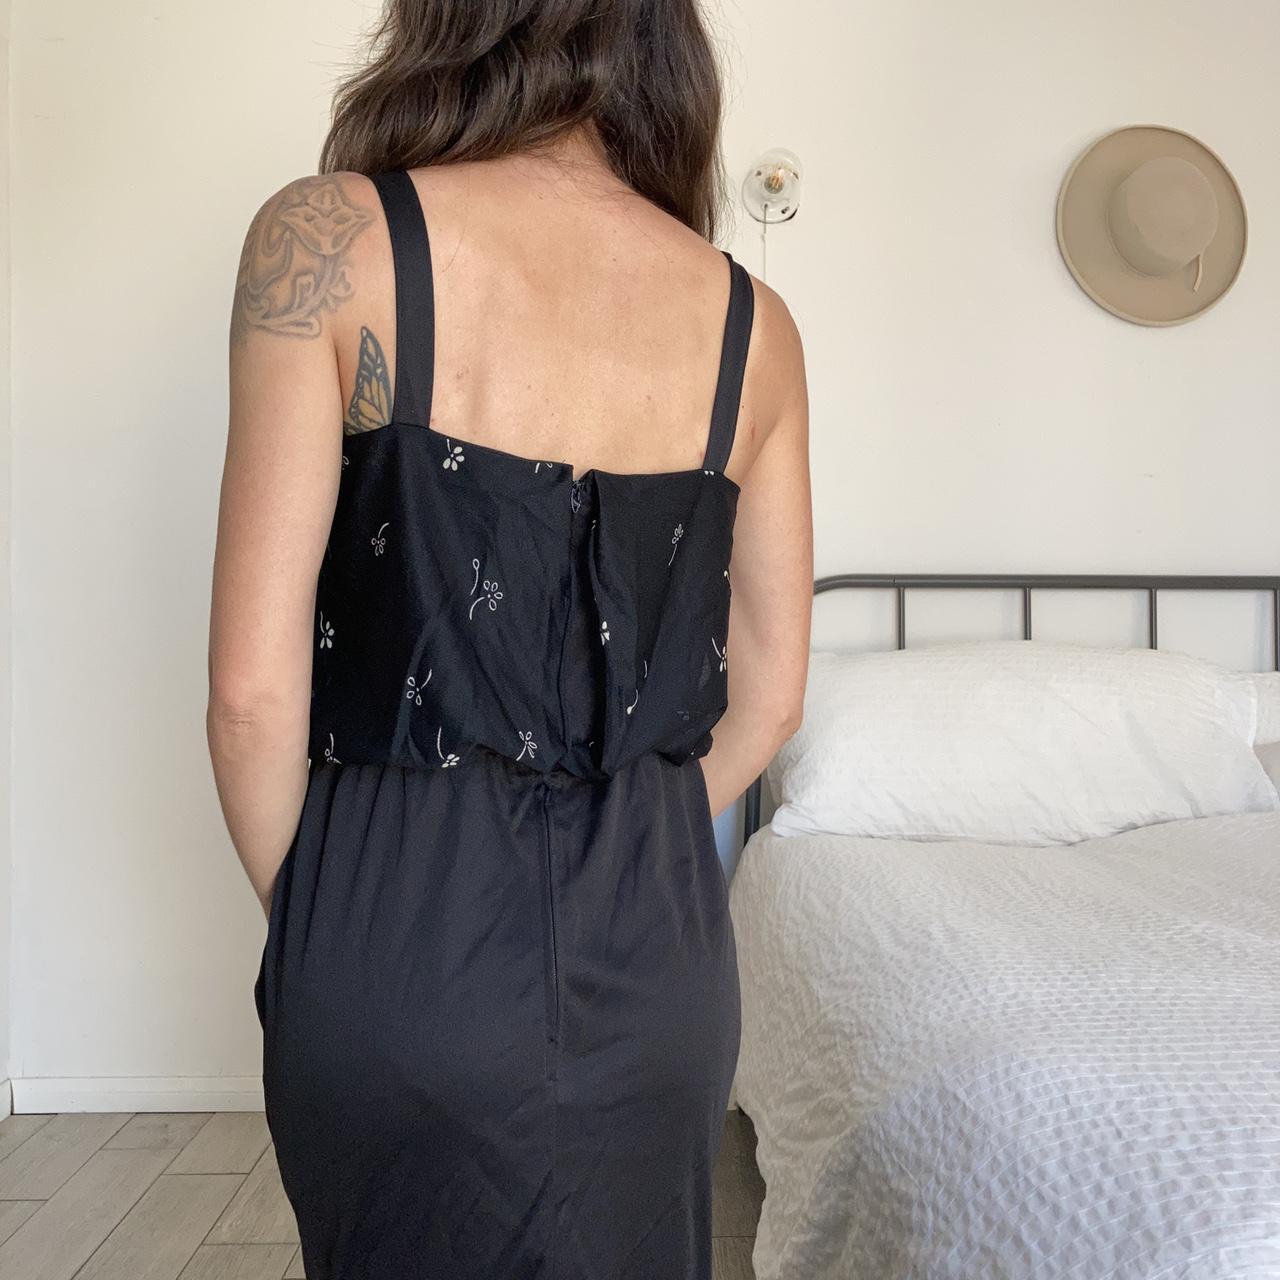 Vintage 70’s black floral maxi dress. Slit up one... - Depop